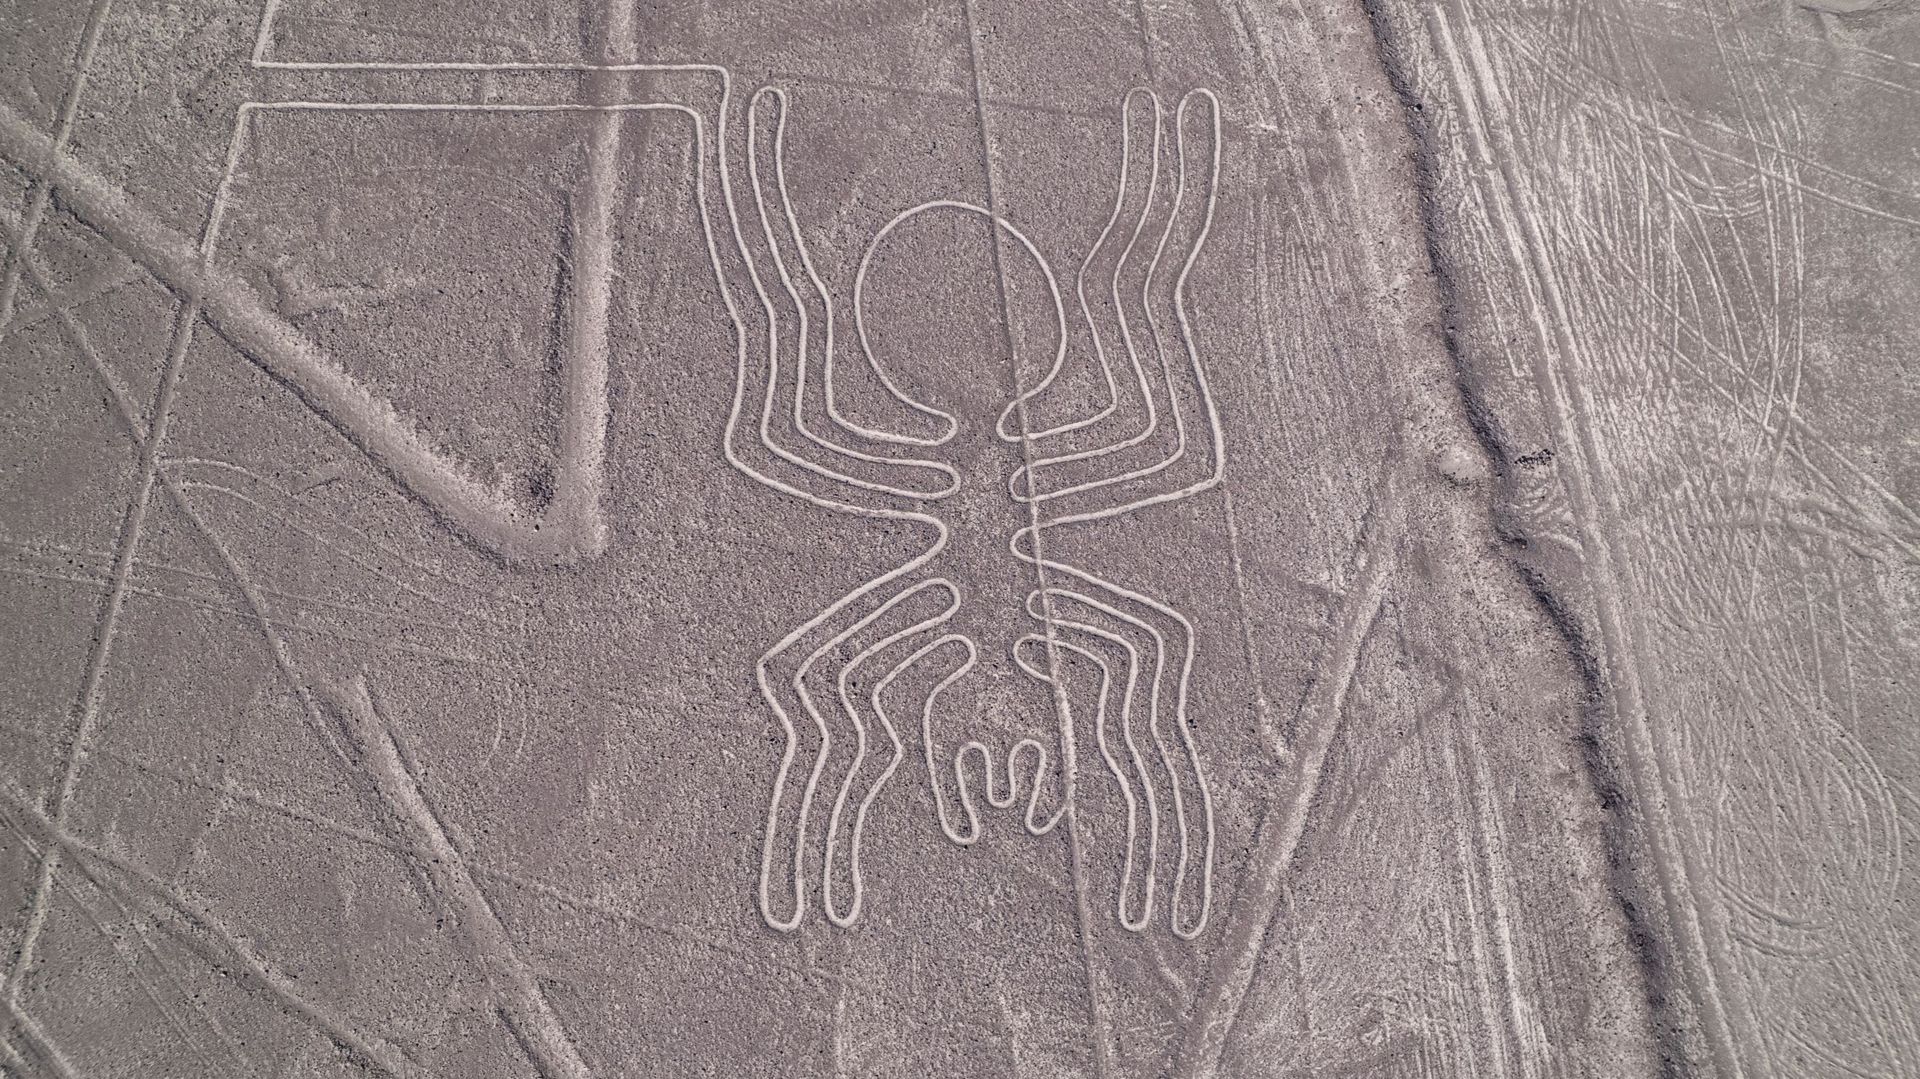 Les géoglpyhes de Nazca sont visibles seulement depuis un point d’altitude.